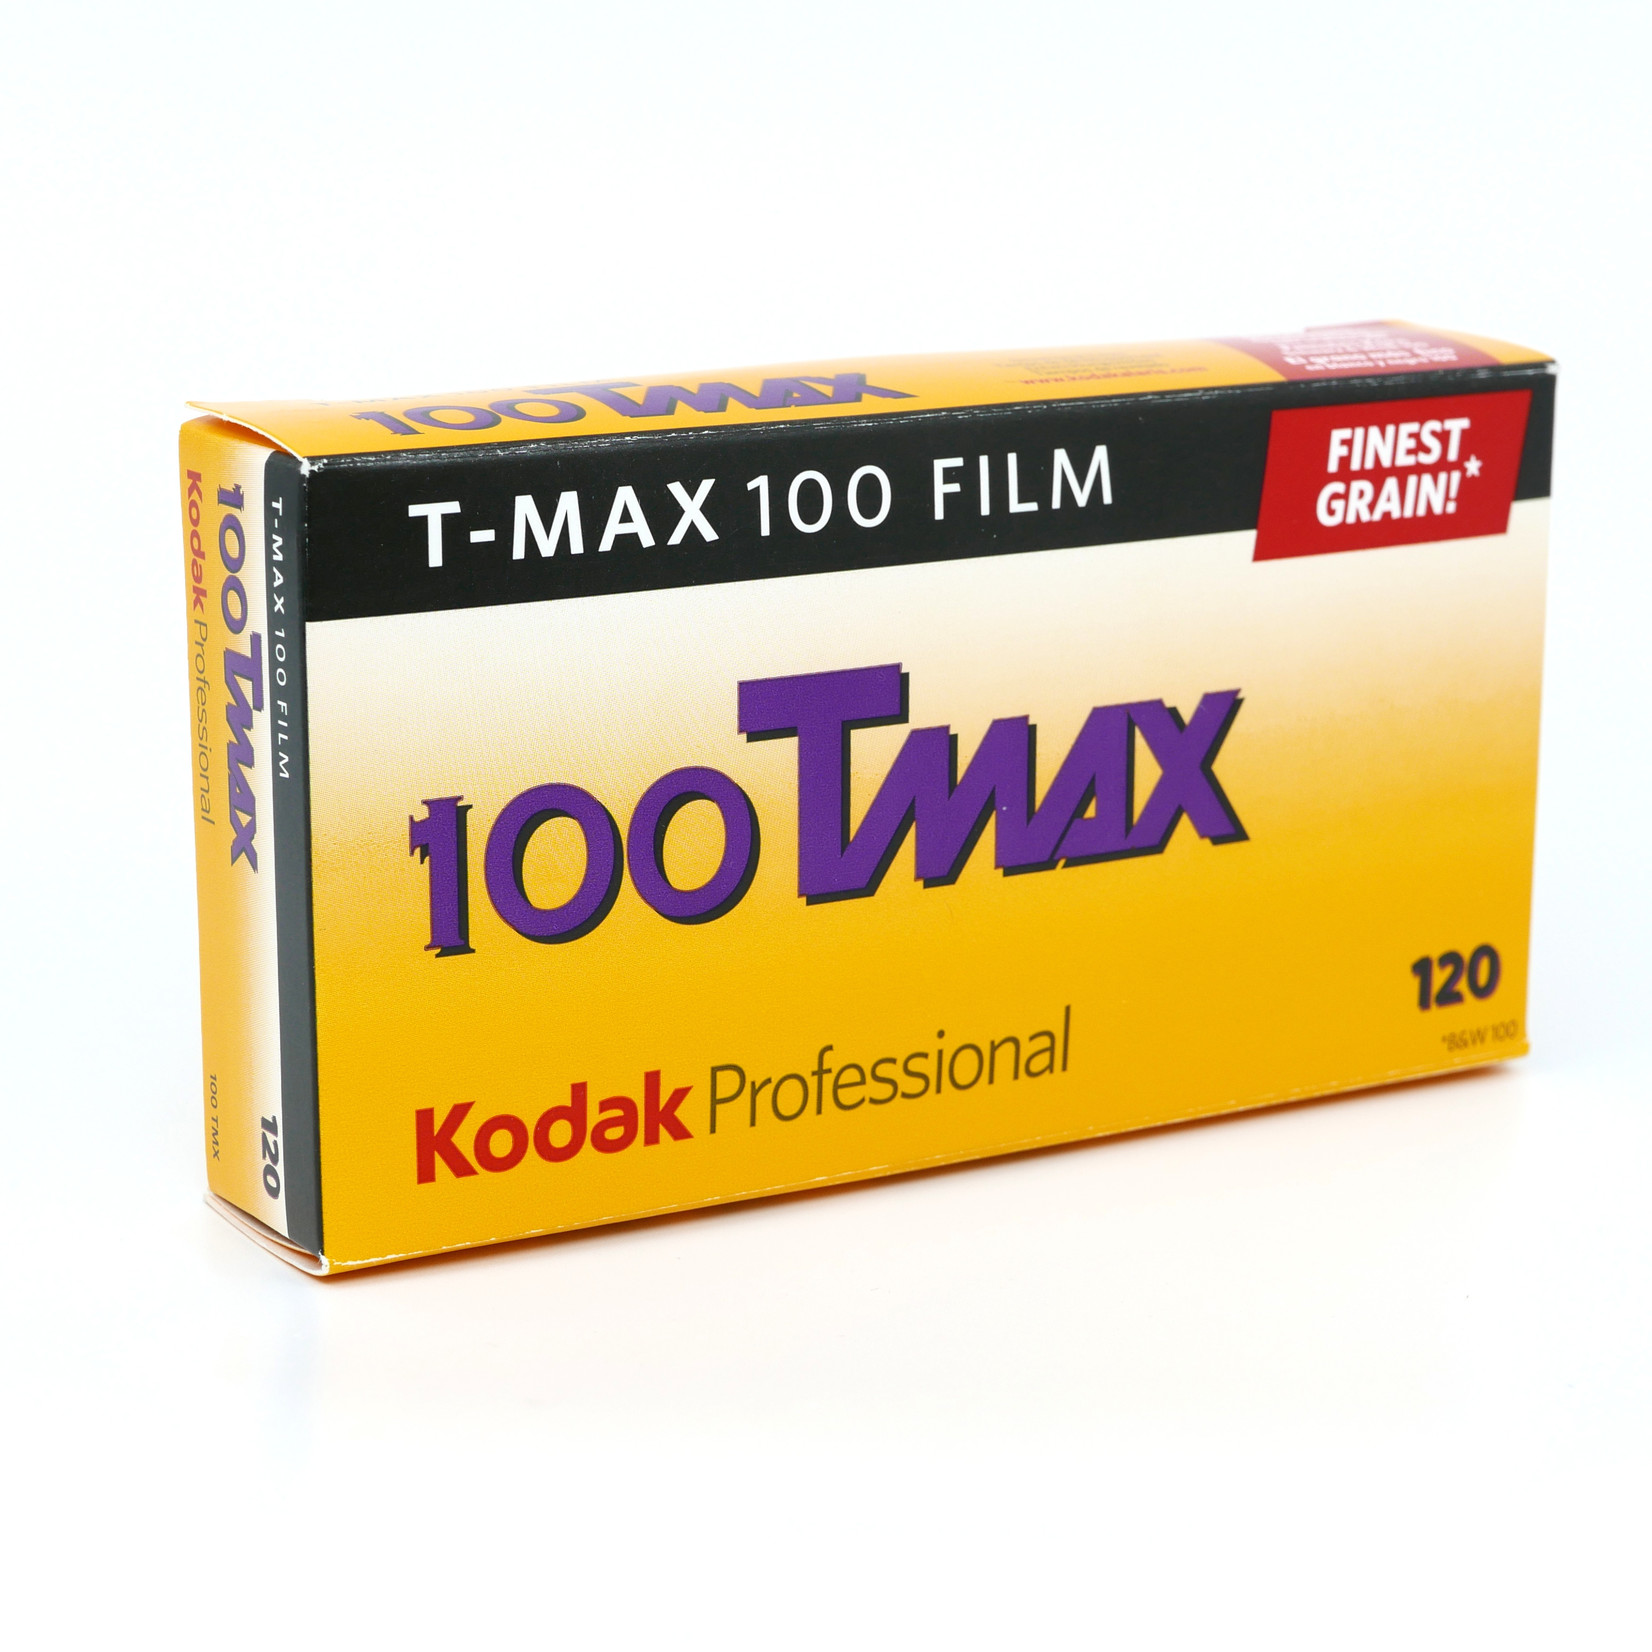 Kodak Kodak 100 T-Max 120mm